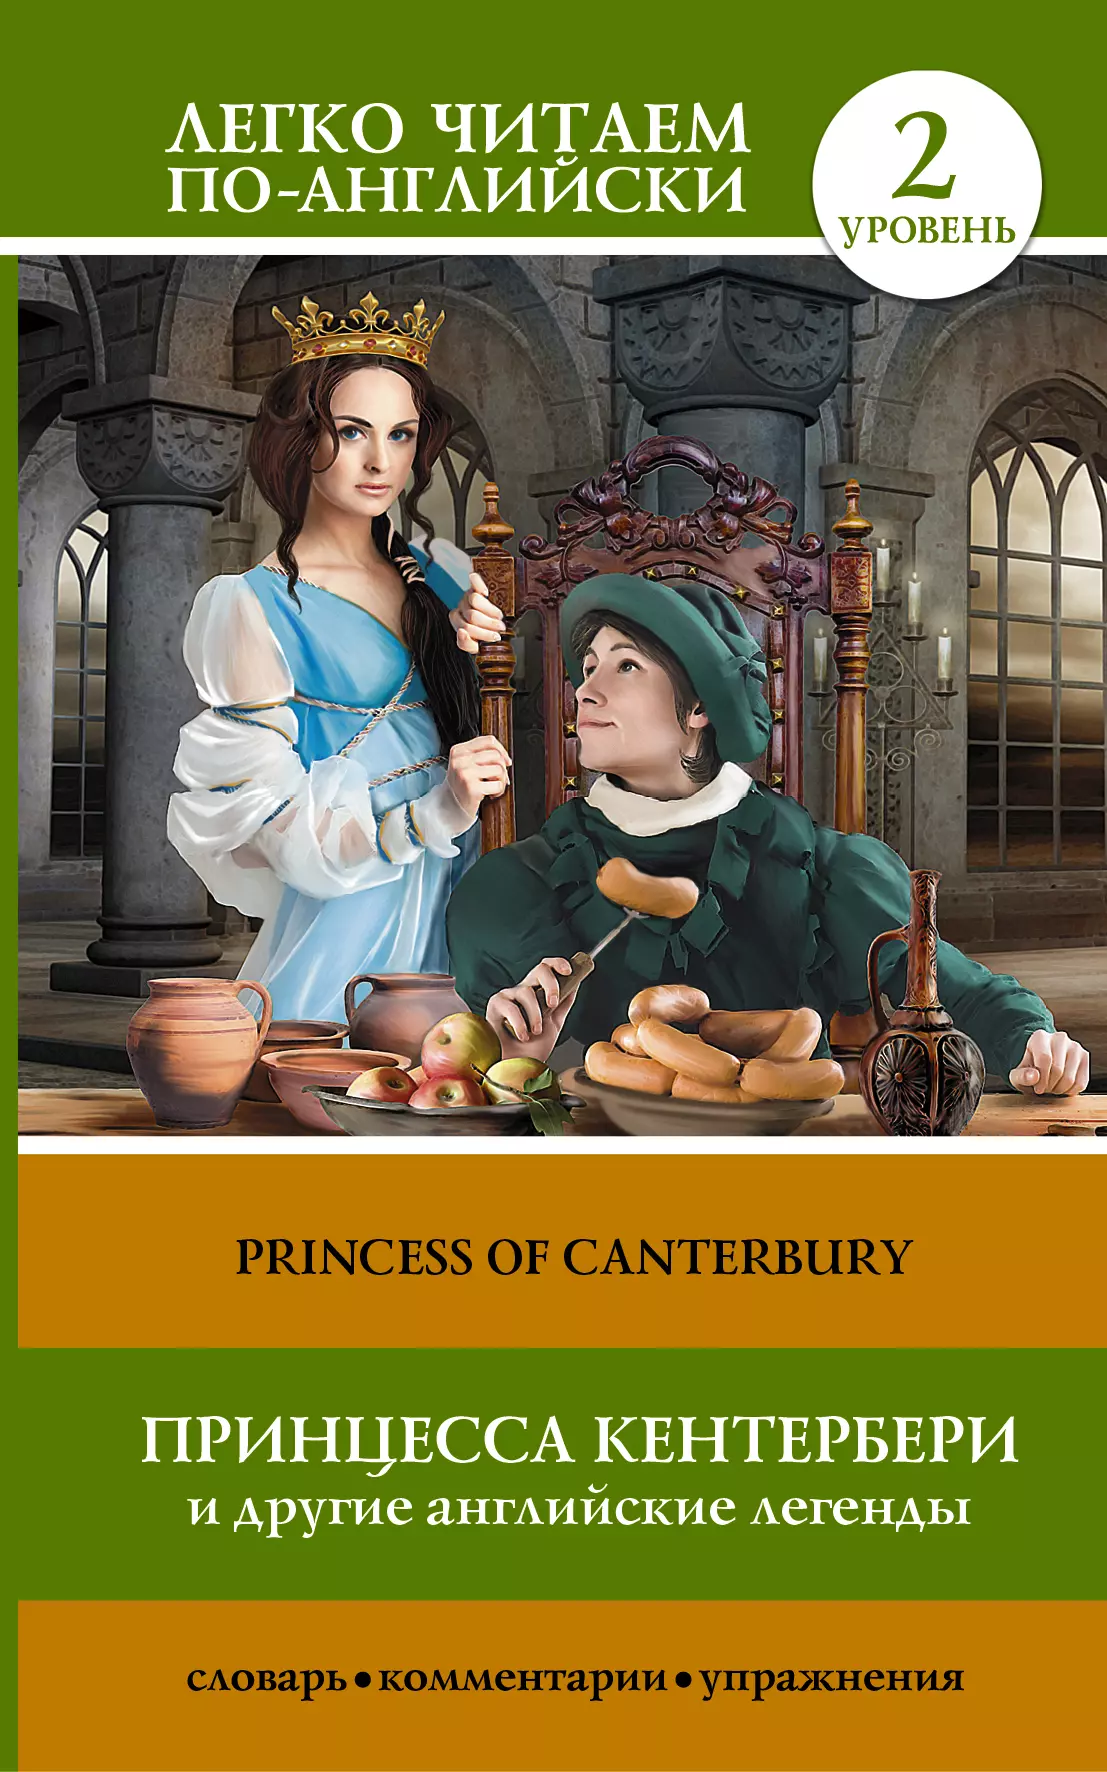 Матвеев Сергей Александрович - Принцесса Кентербери и другие английские легенды. (2 уровень)